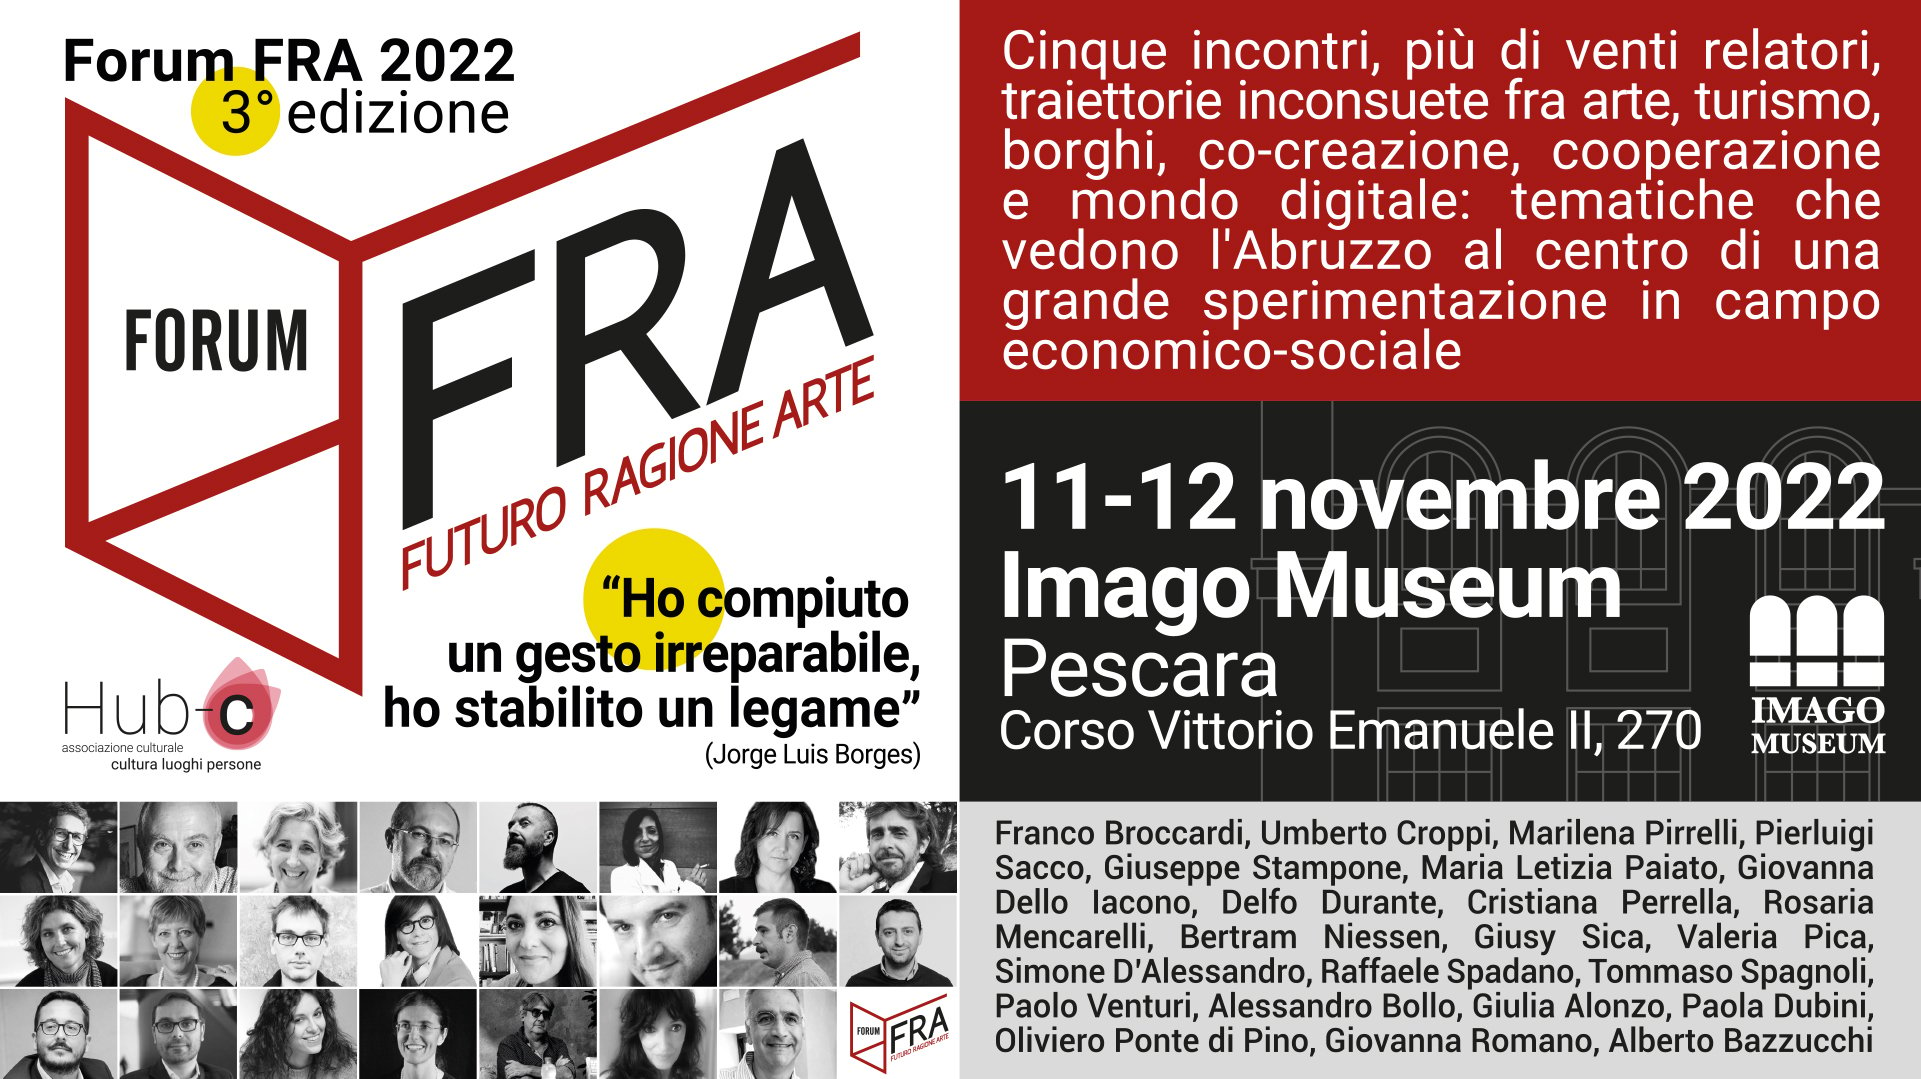 Forum FRA 2022